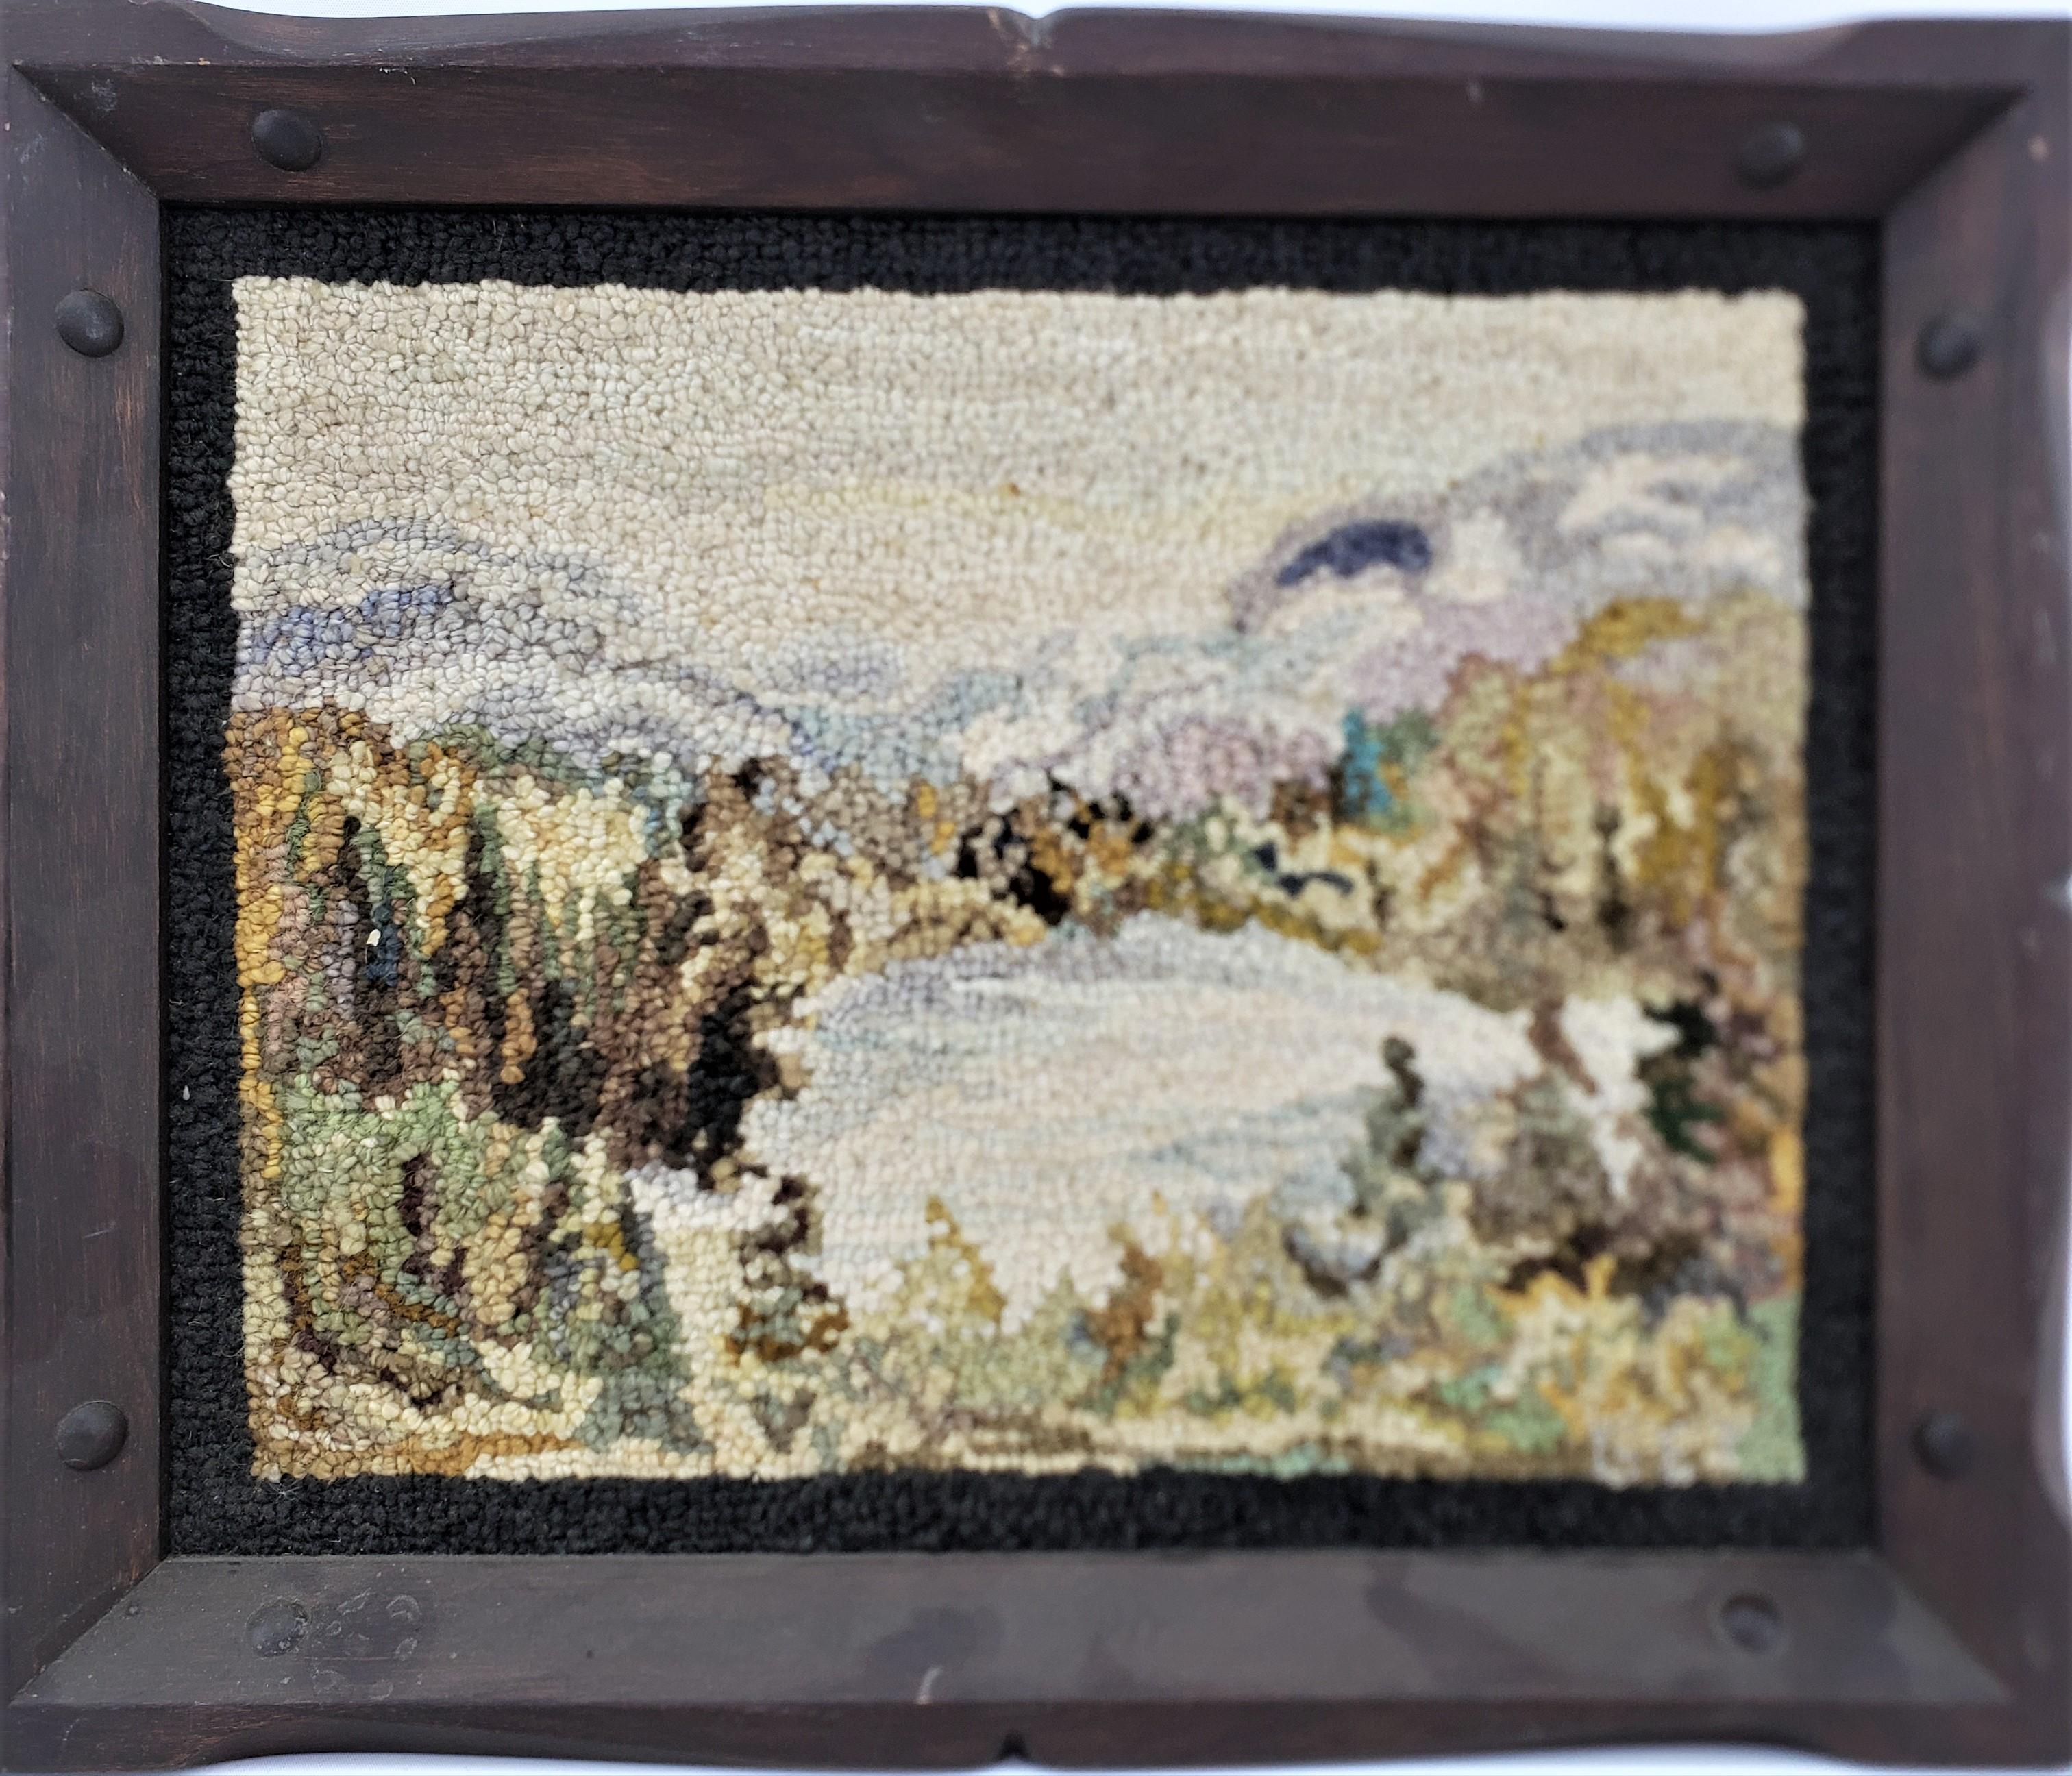 Ce tapis crocheté encadré a été réalisé par le célèbre George Edouard Tremblay du Québec (Canada) vers 1940 dans le style Folk Art de l'époque. Le tapis ou la natte est fait de laine, vraisemblablement sur de la toile de jute et encadré dans un